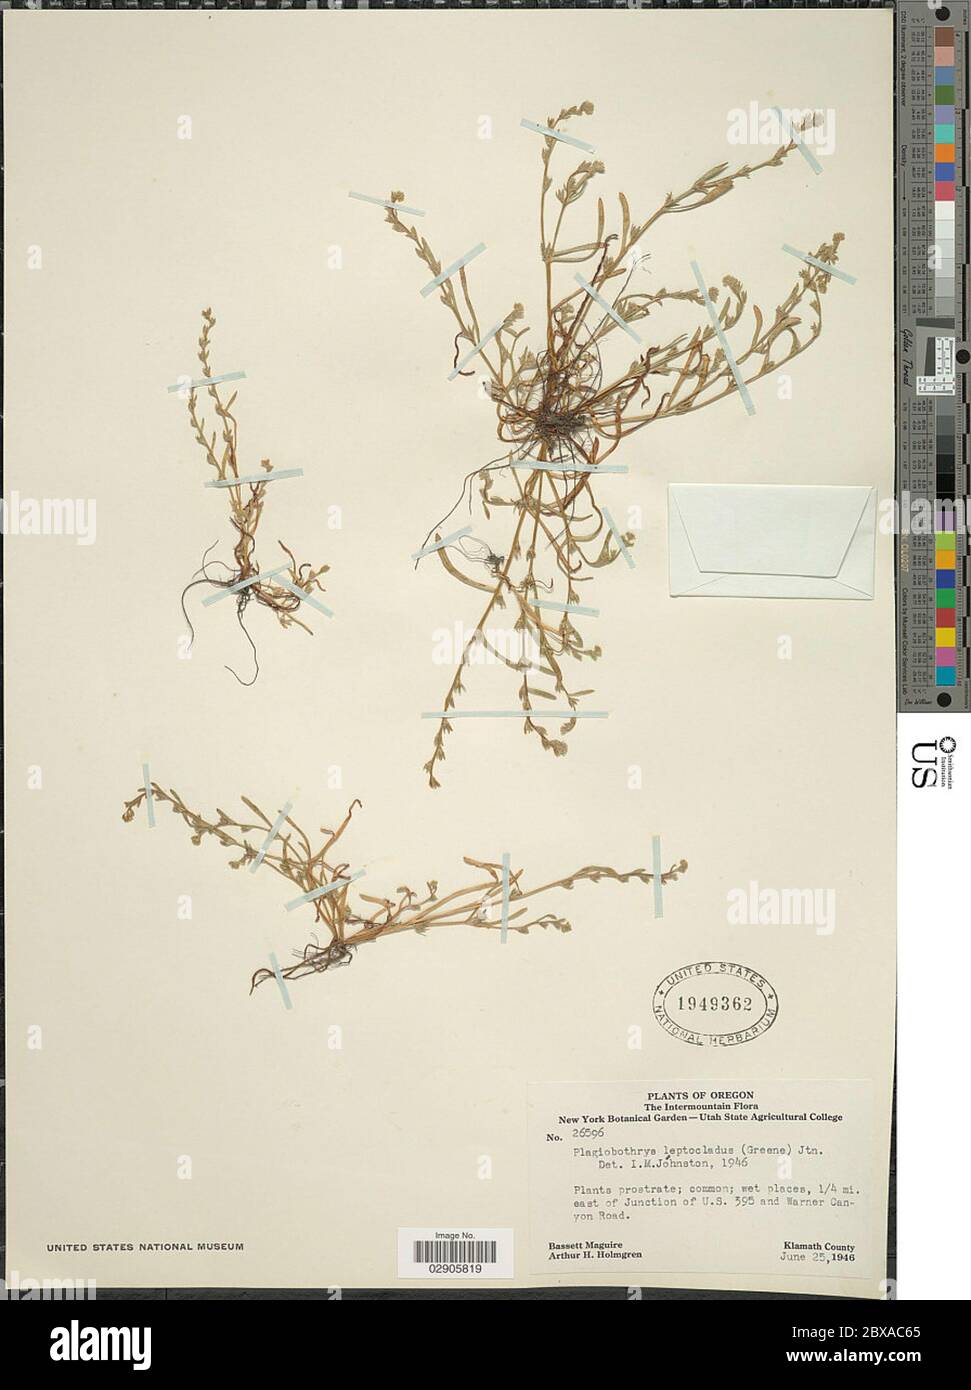 Plagiobothrys leptocladus Greene IM Johnst Plagiobothrys leptocladus Greene IM Johnst. Stock Photo